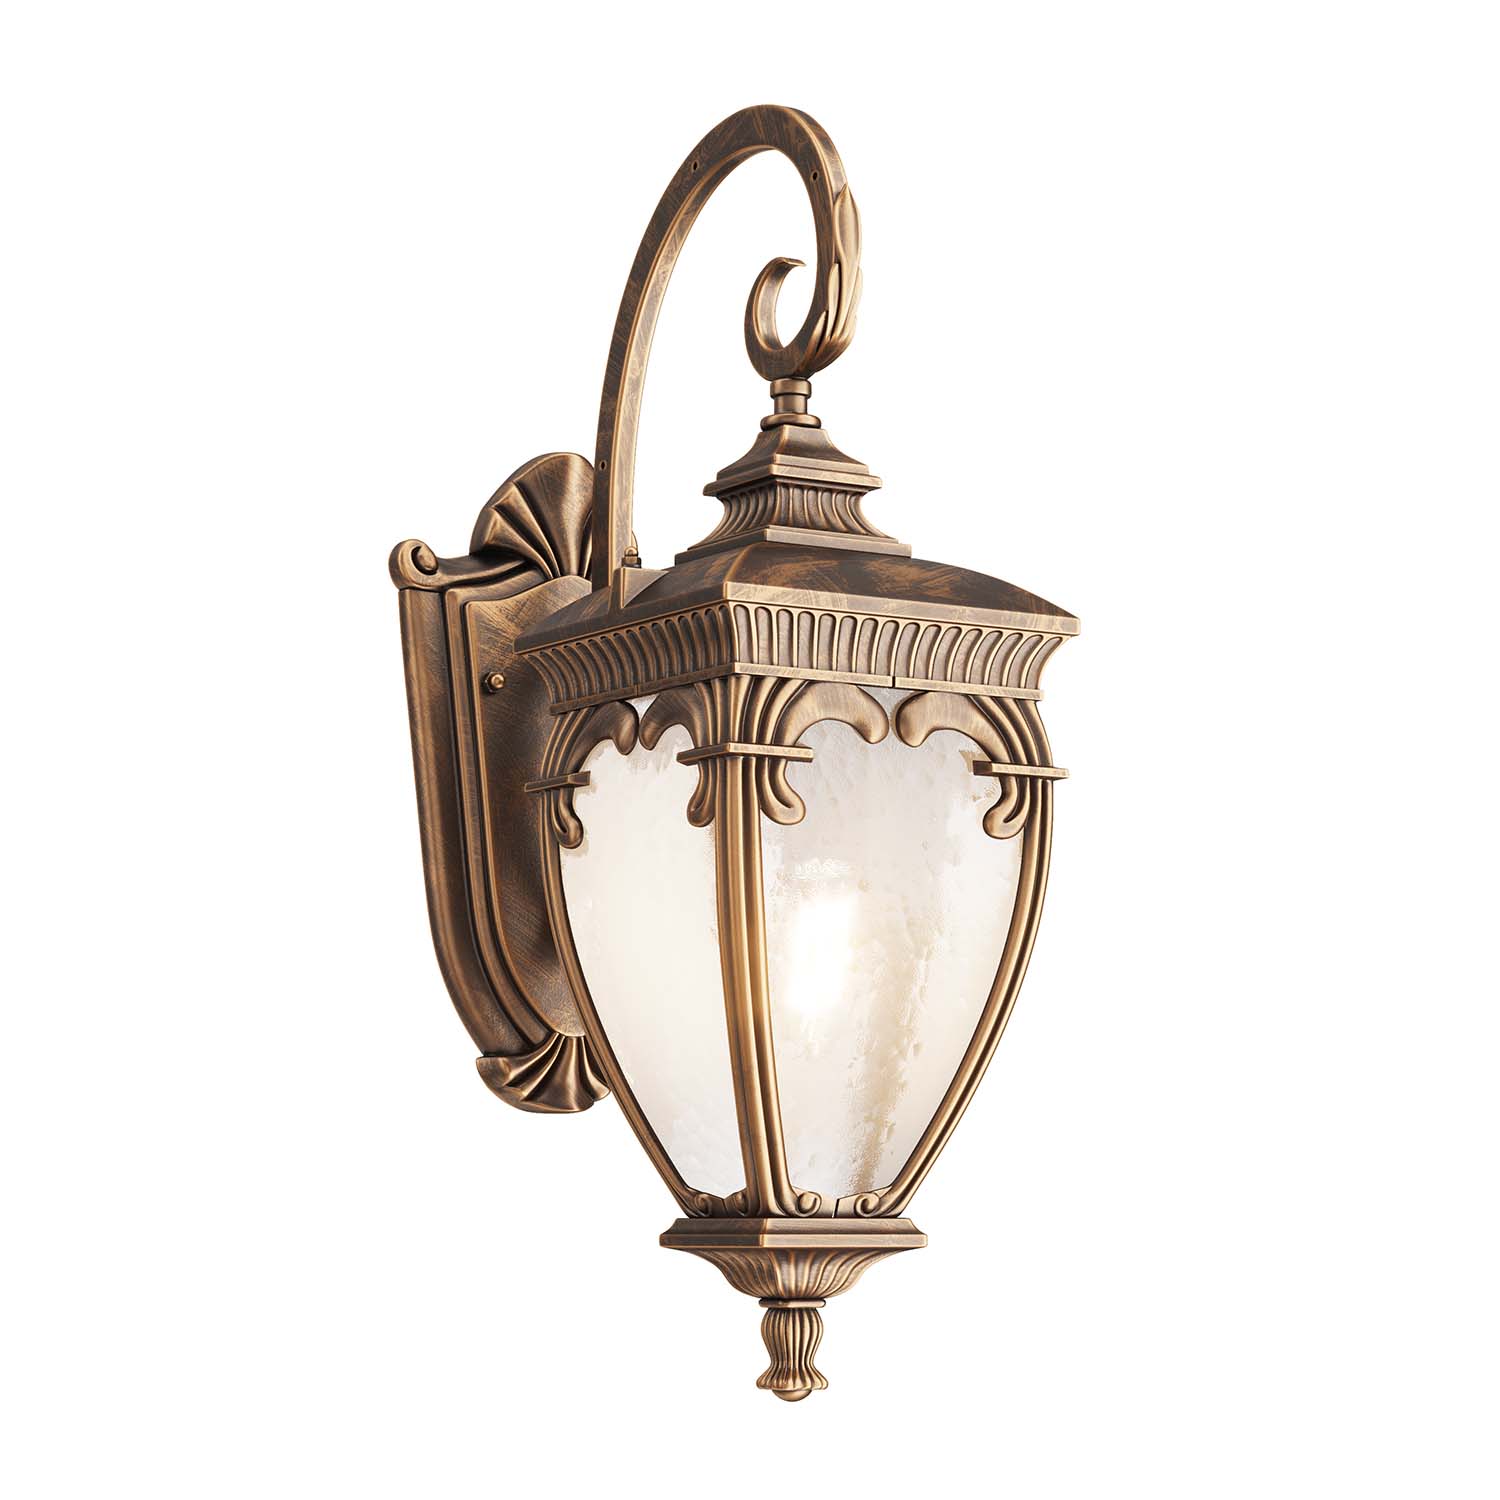 FLEUR - Vintage Italian style lantern outdoor wall light